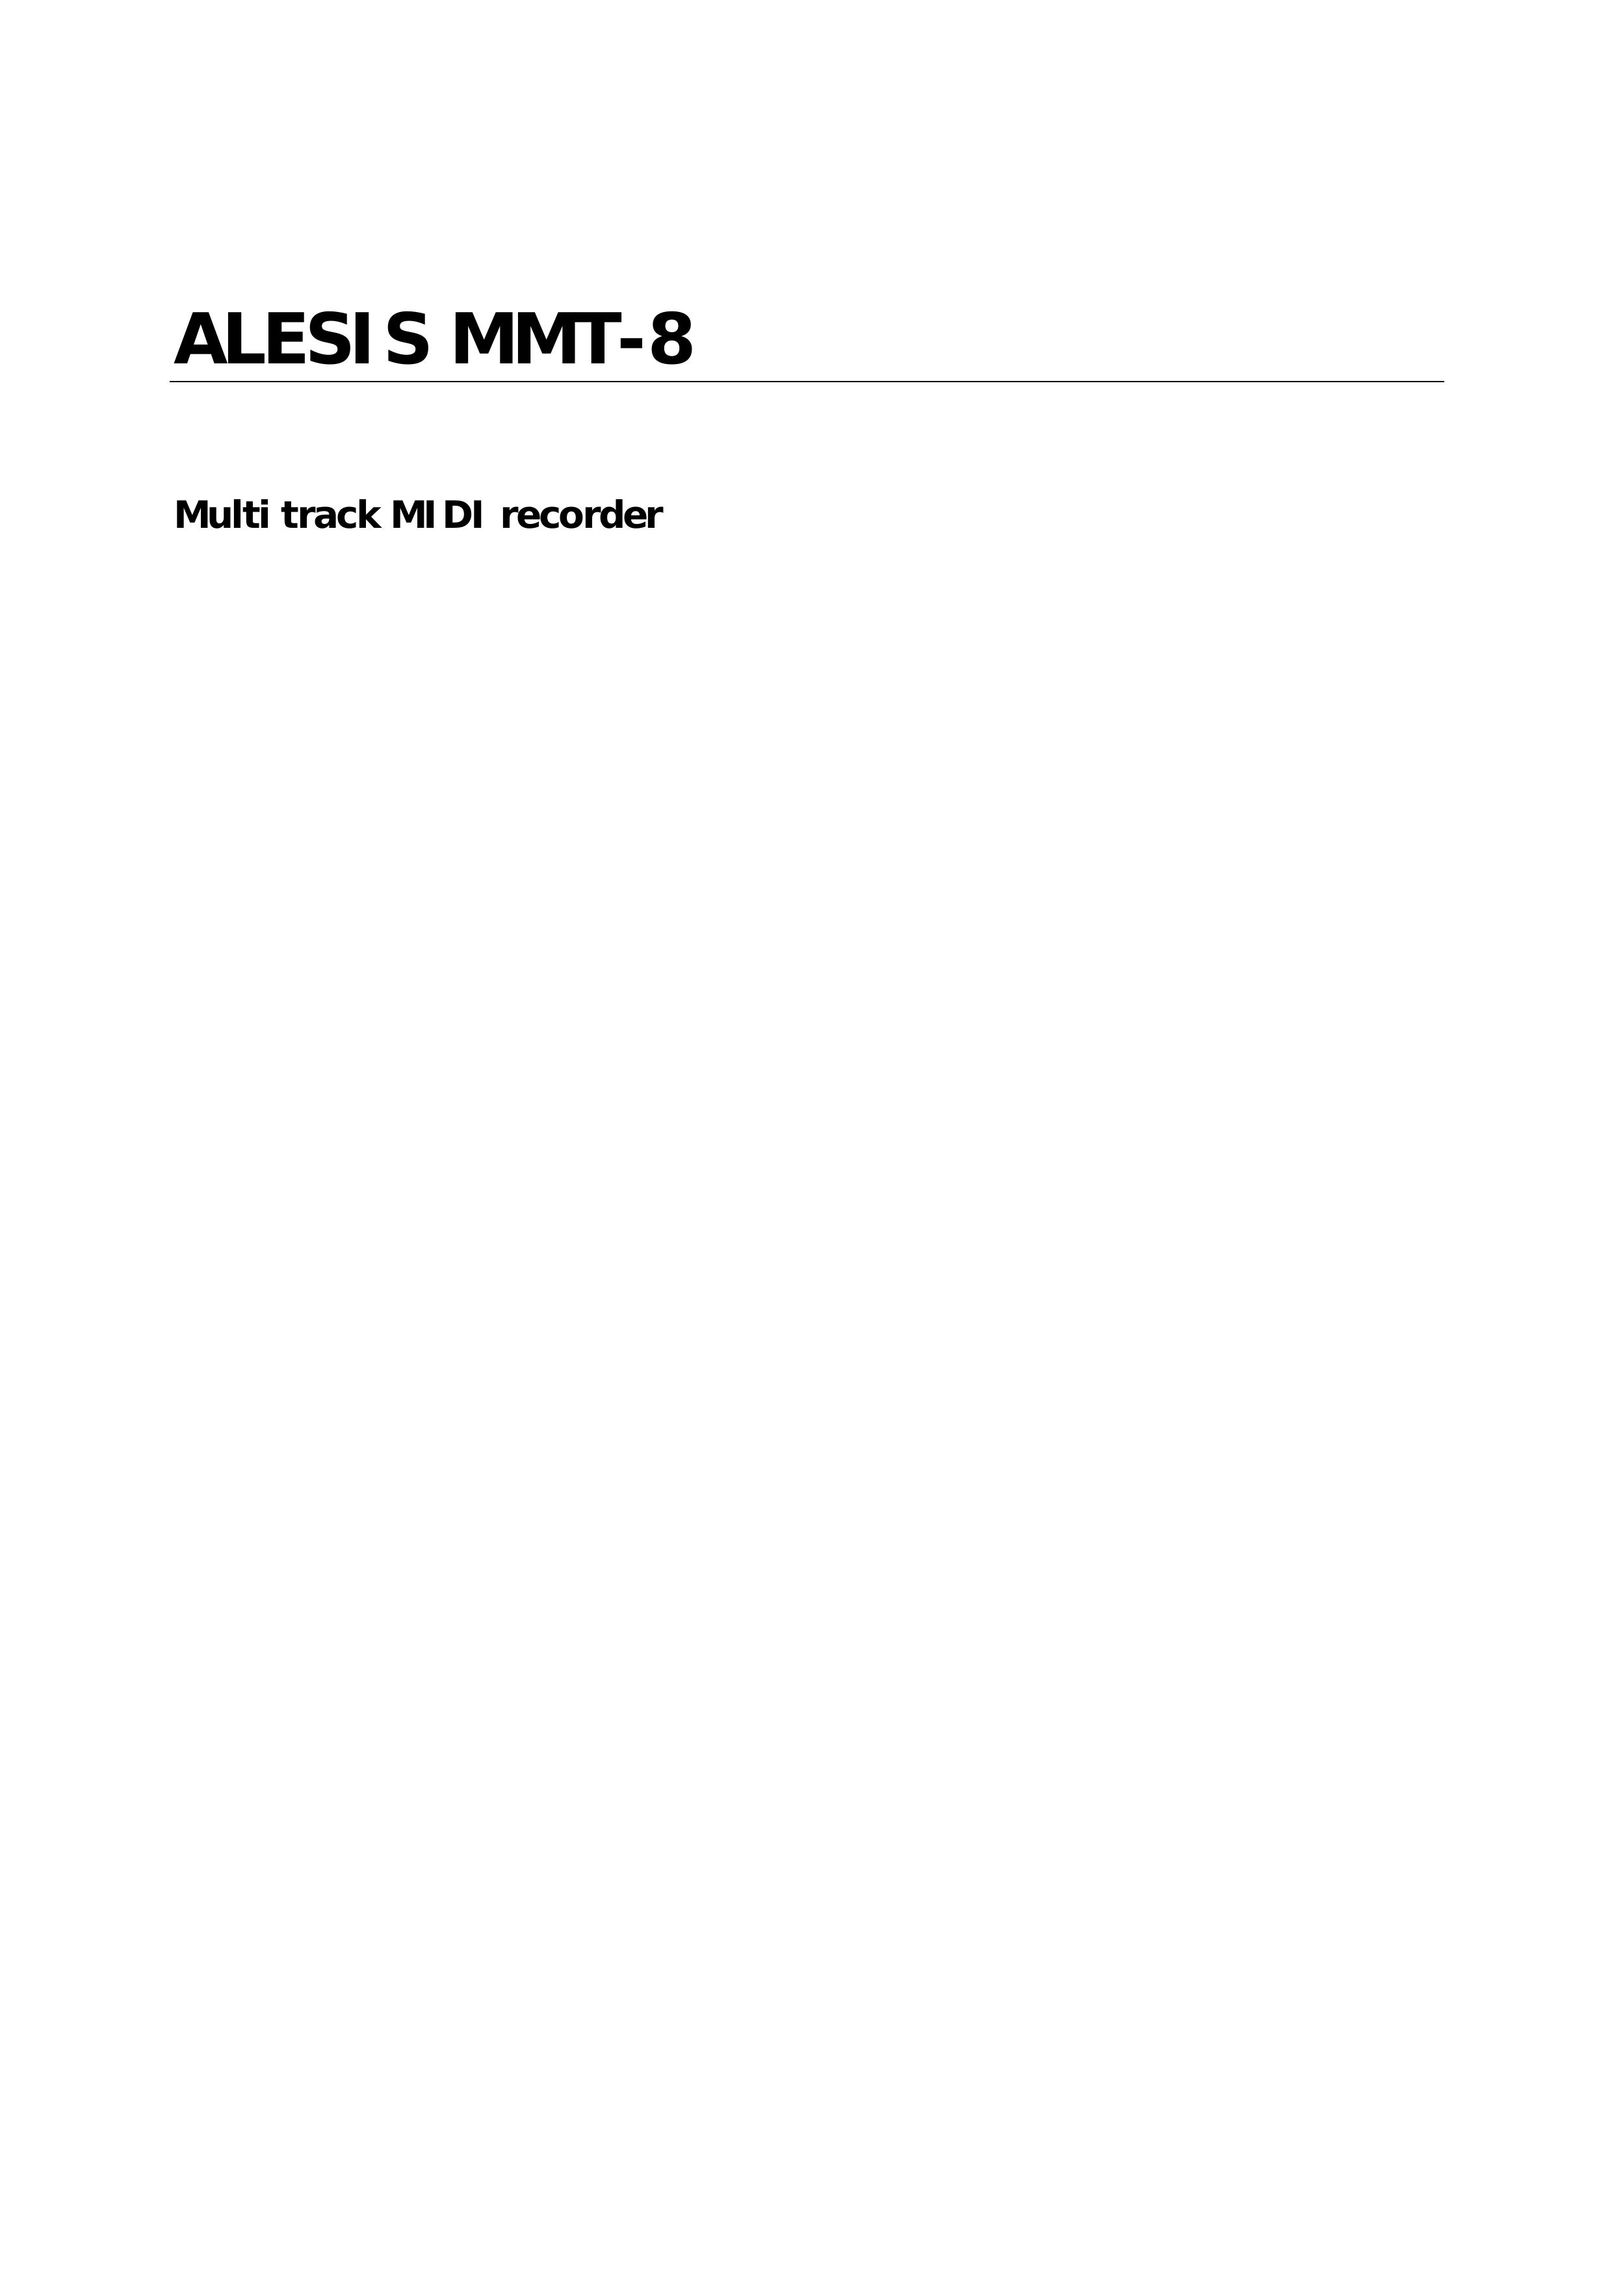 Alesis MMT-8 CD Player User Manual